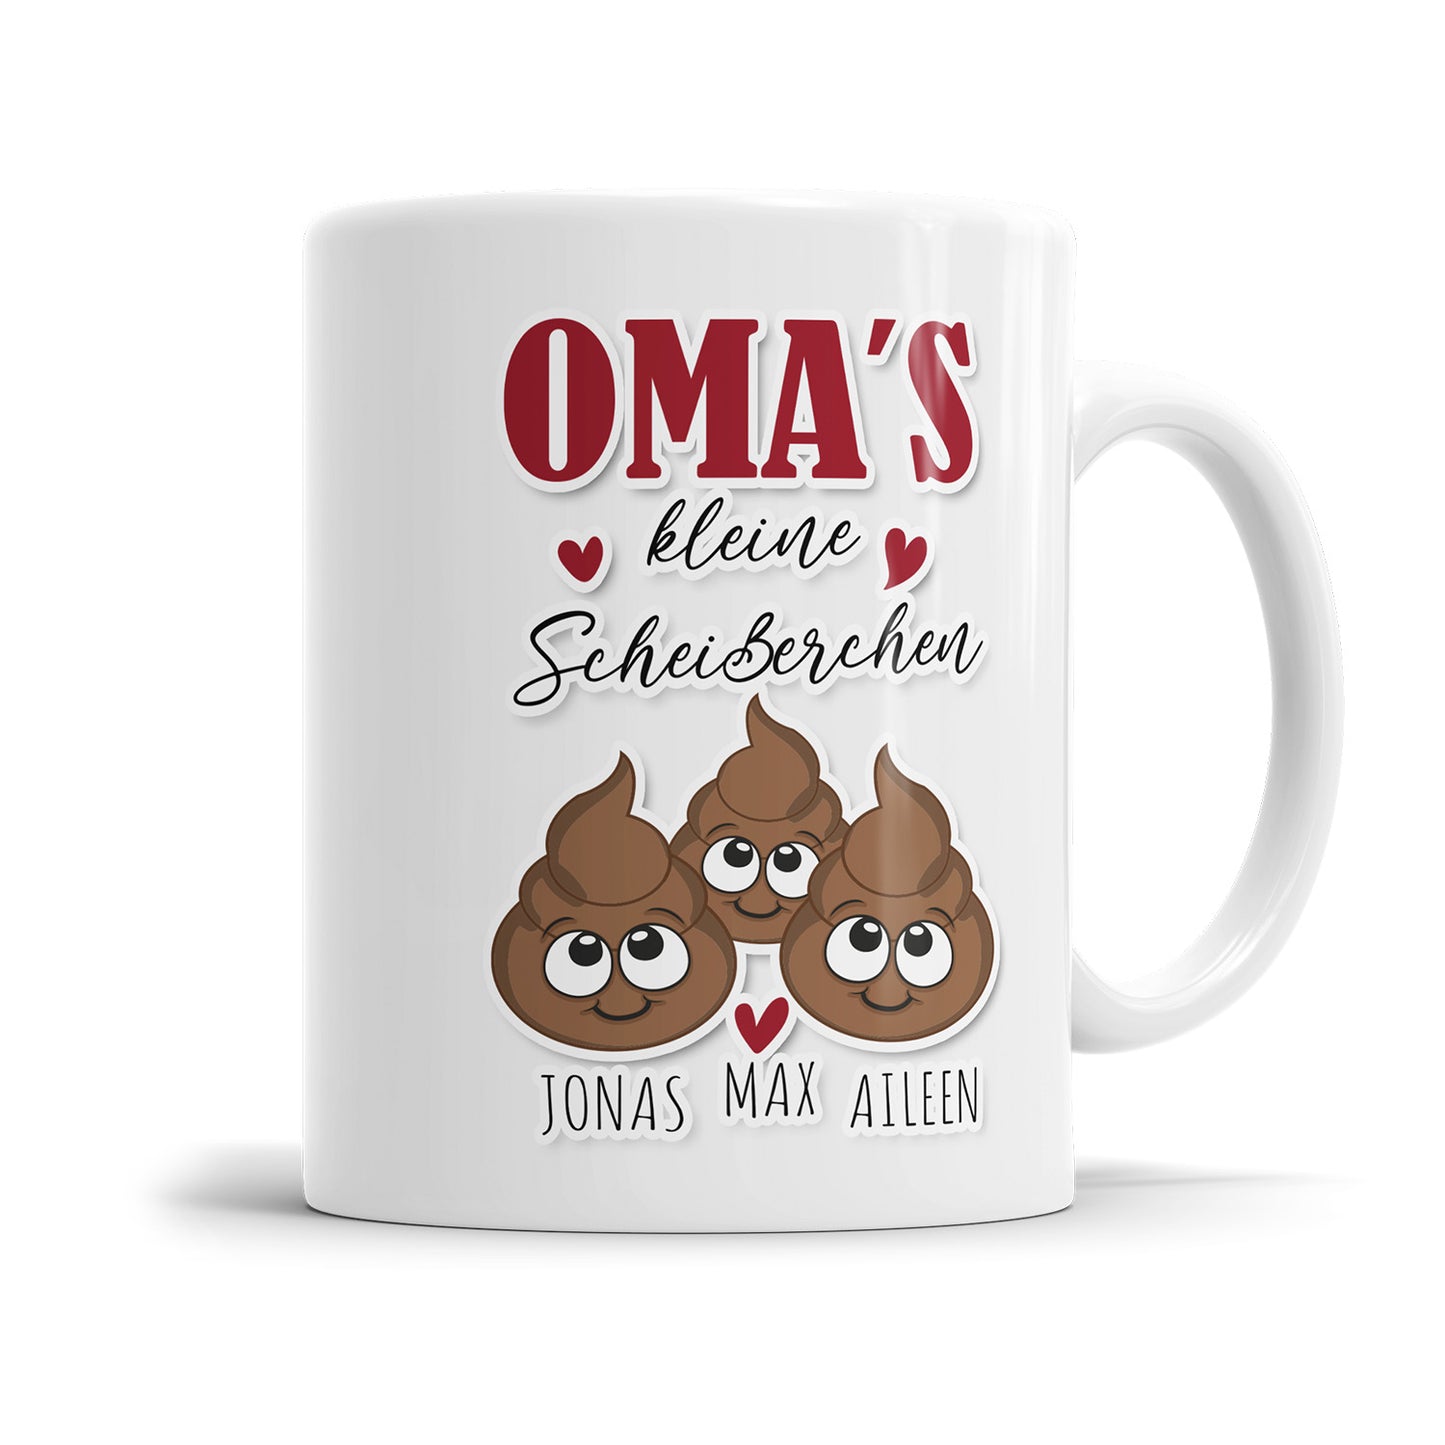 Tasse für Oma - Omas kleine Scheißerchen 1-4 Kinder Tasse personalisiert mit Namen der Enkel Fulima